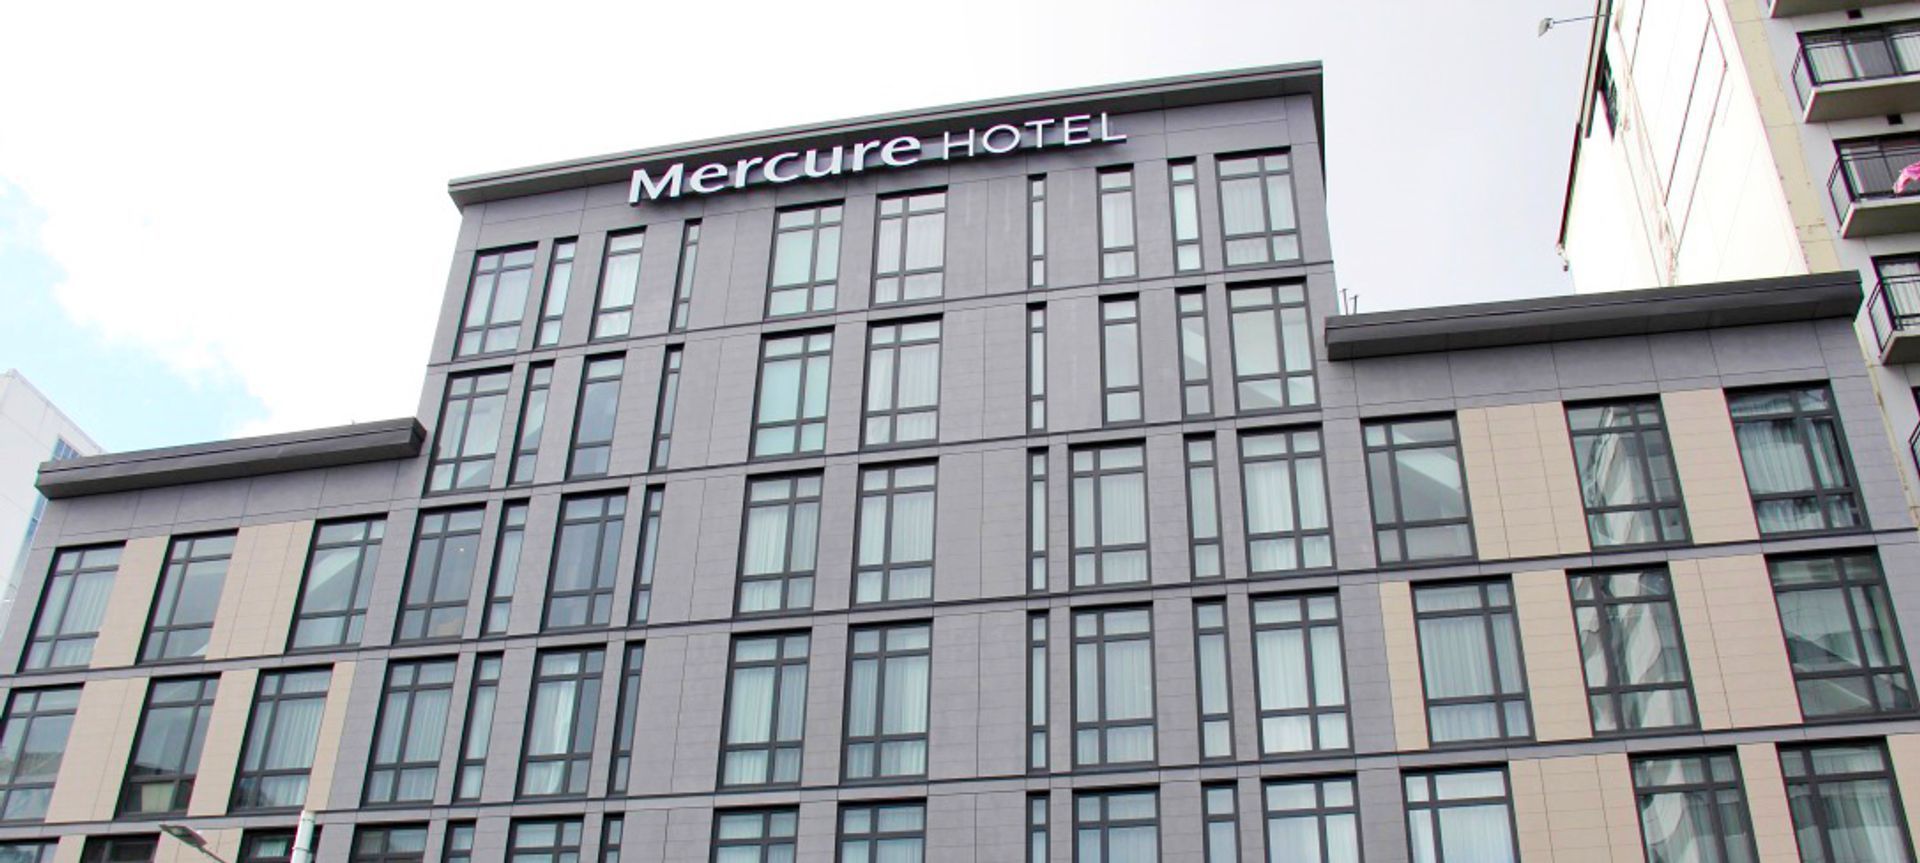 Mercure Hotel, 500 Queen Street, Auckland City banner